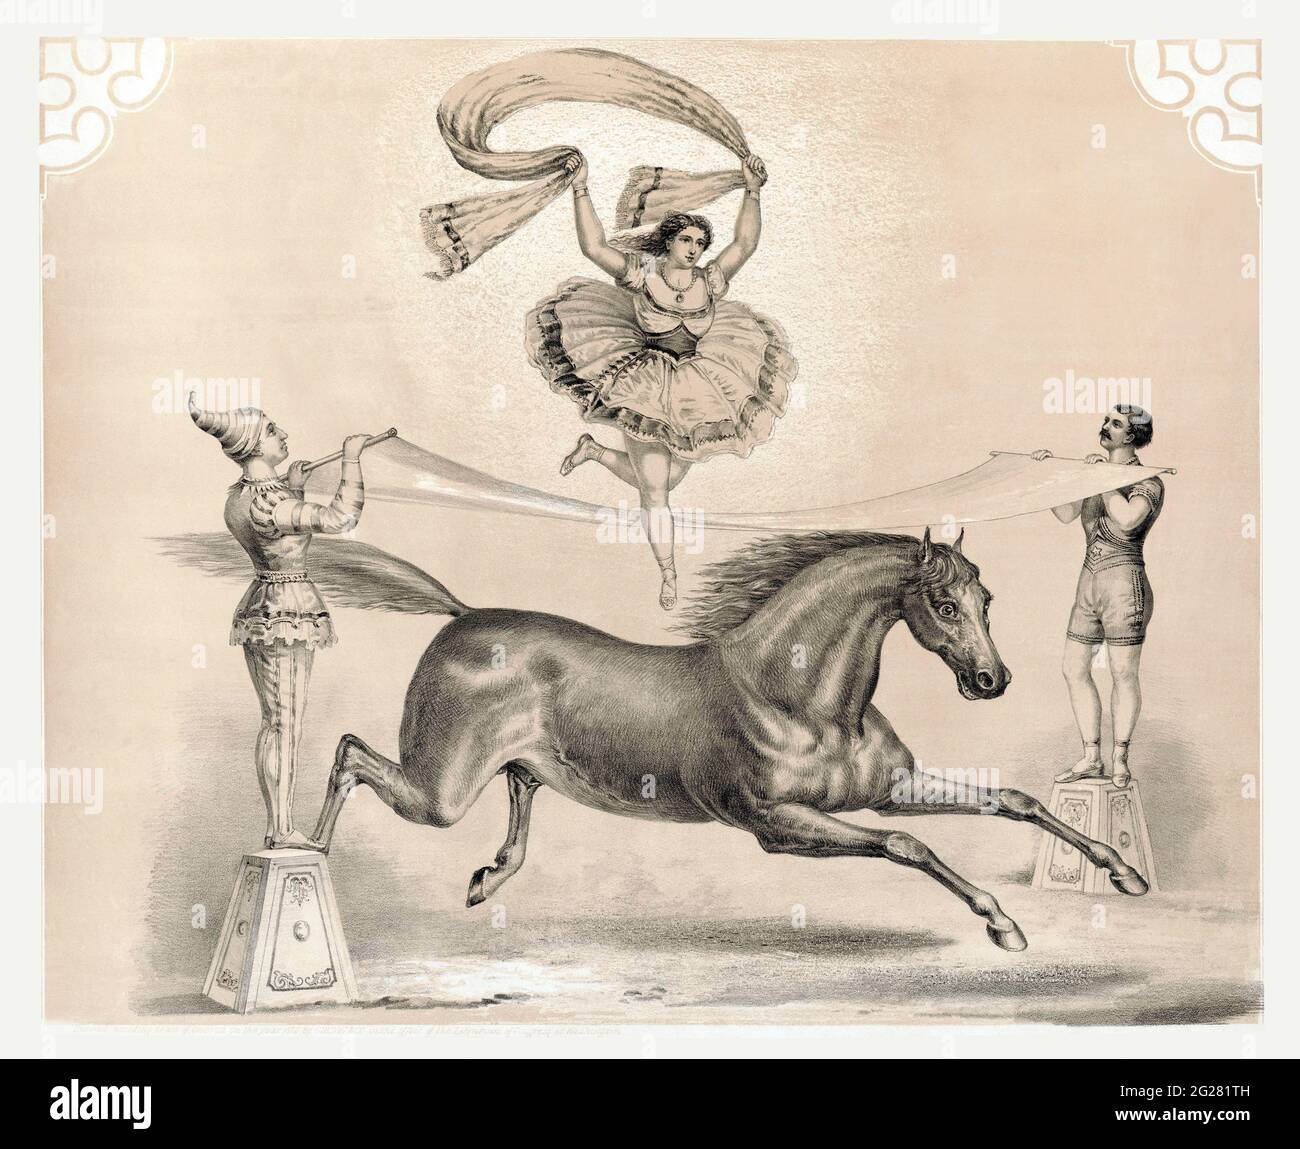 Vintage-Druck einer Zirkusdarstellerin, die über ein großes Band springt und dann wieder auf dem Pferd landet. Stockfoto